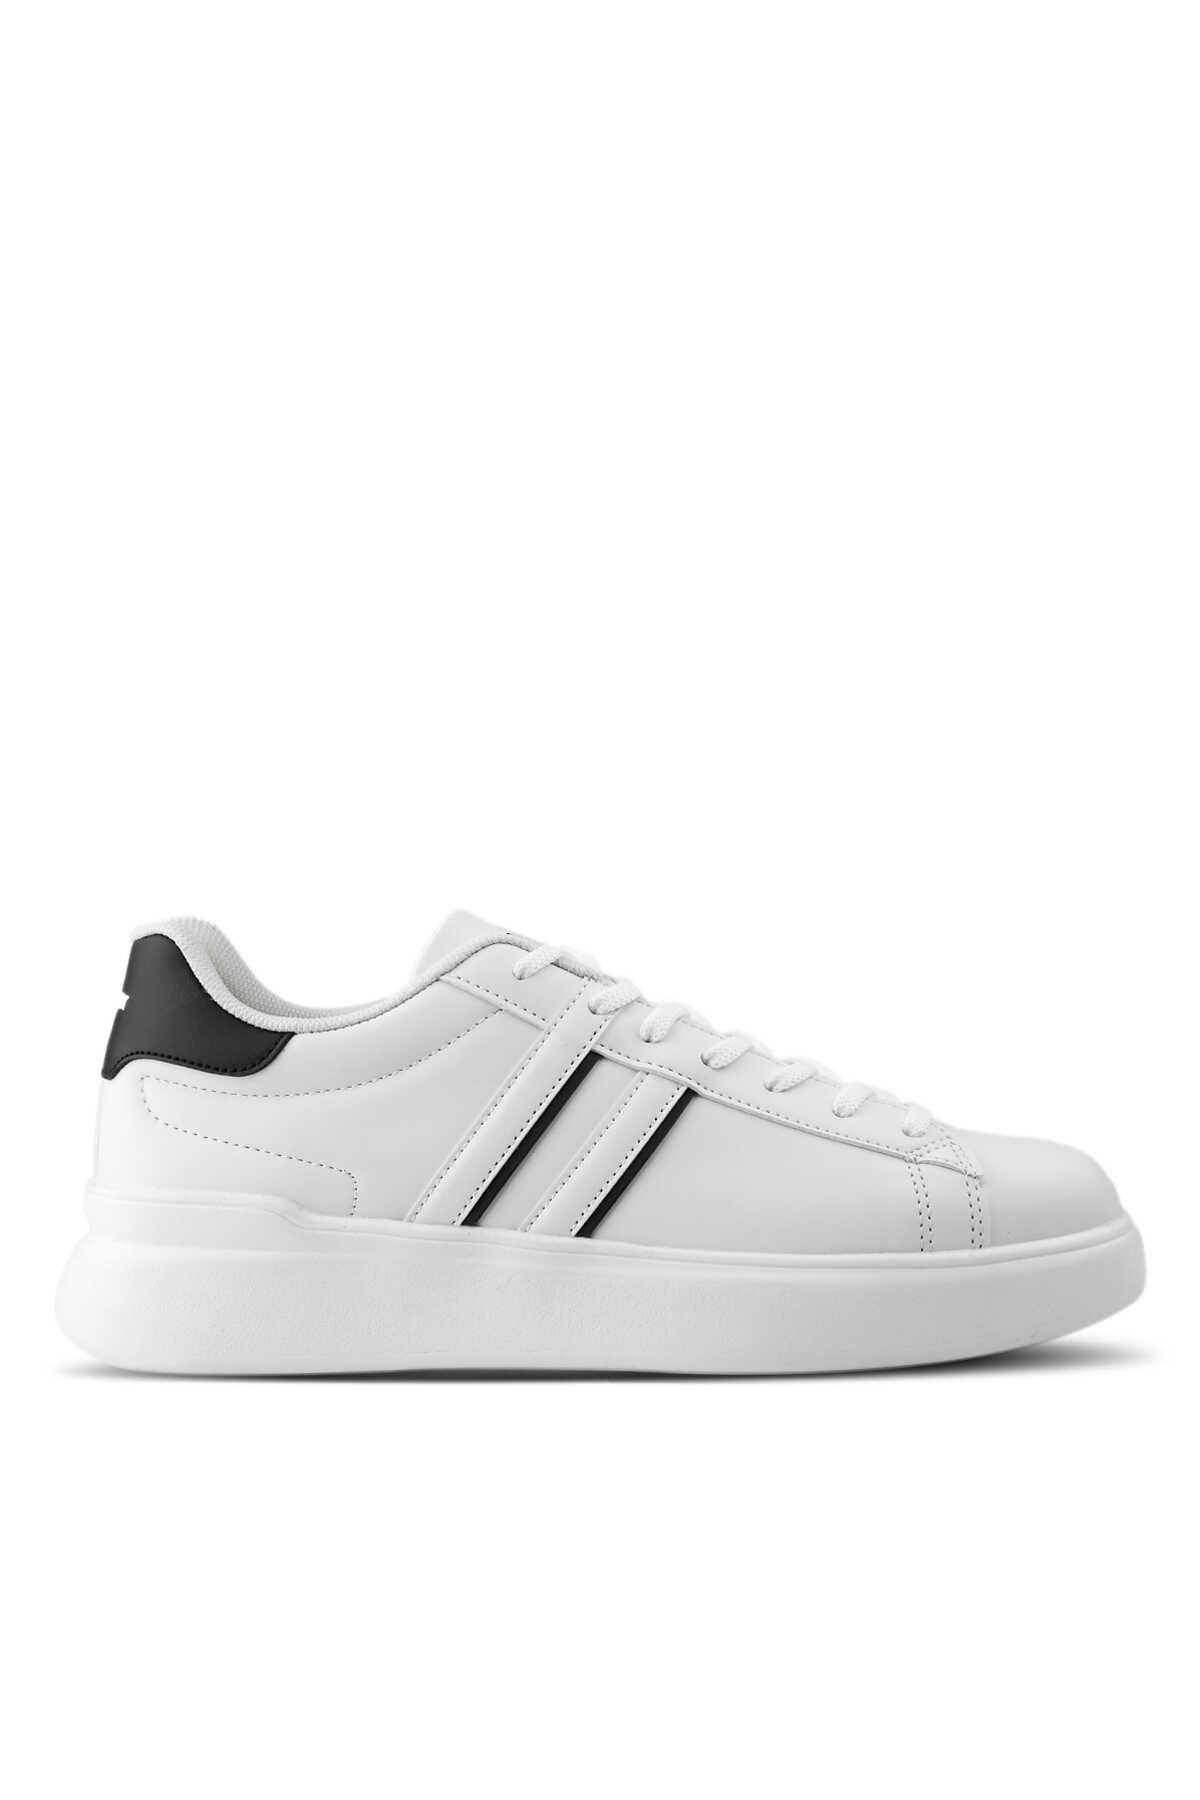 Slazenger - Slazenger BALTAZAR Sneaker Erkek Ayakkabı Beyaz / Siyah